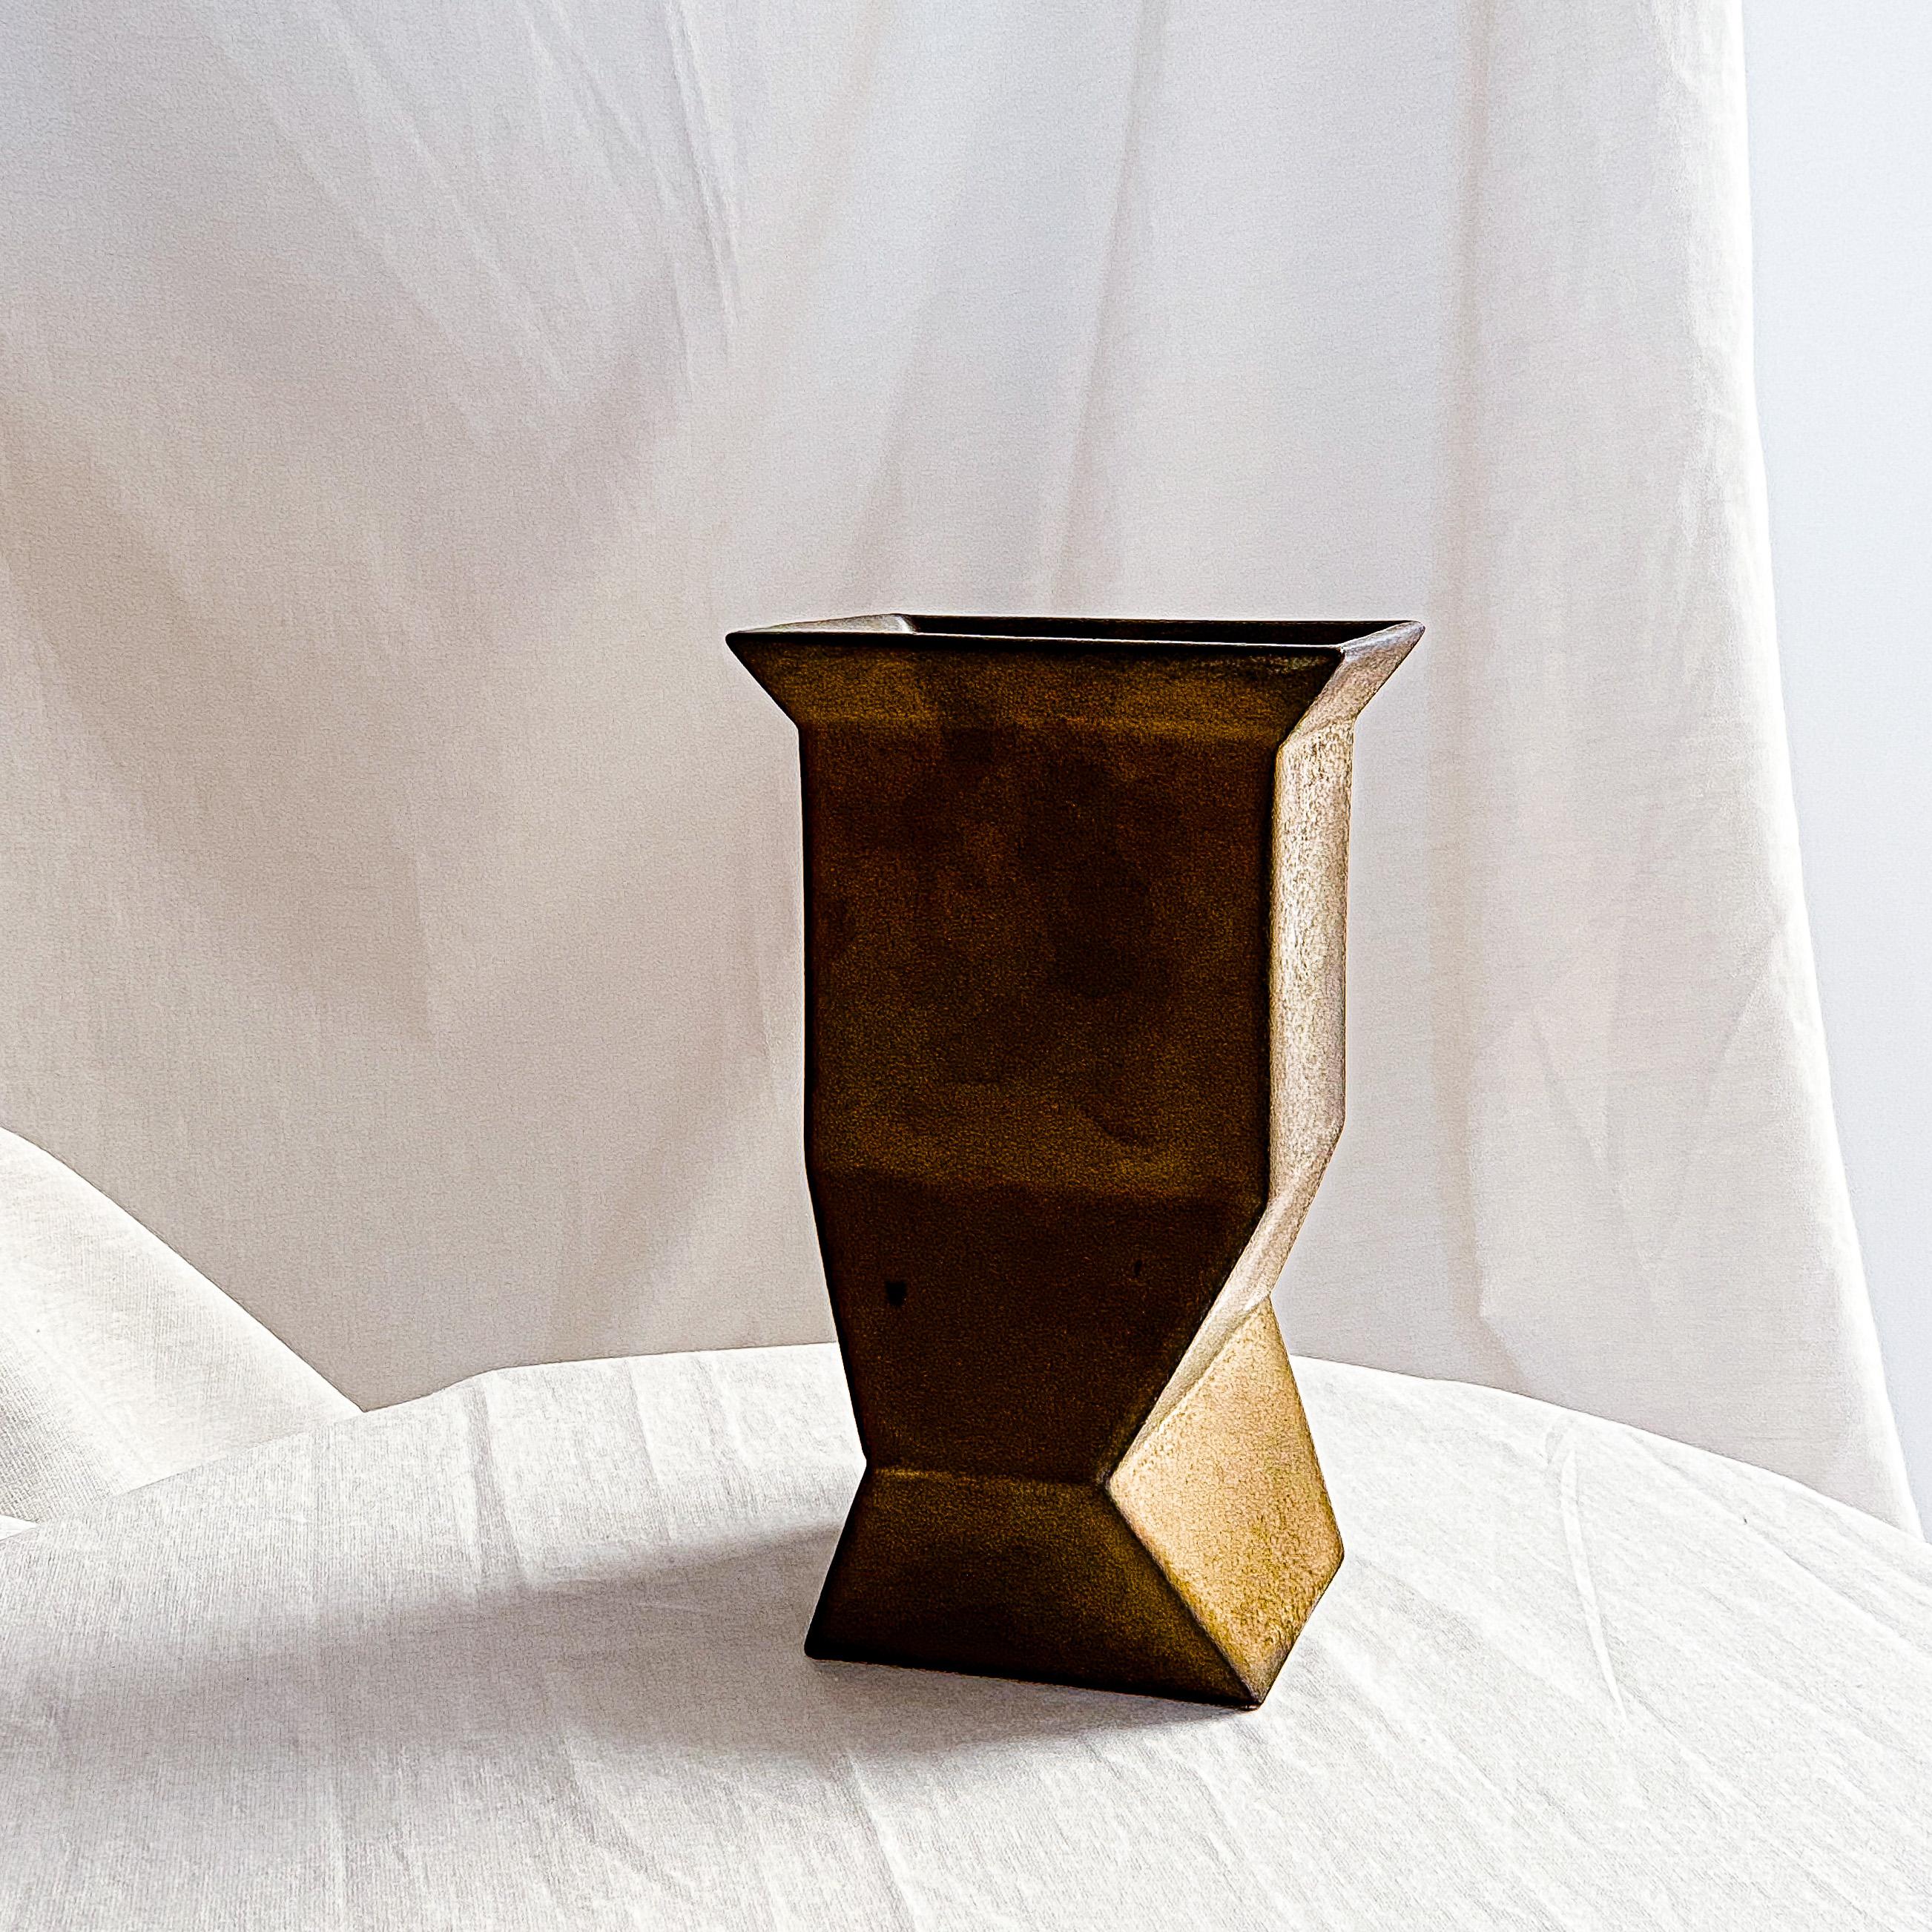 20th Century Dutch modernist constructivist vase by Jan van der Vaart For Sale